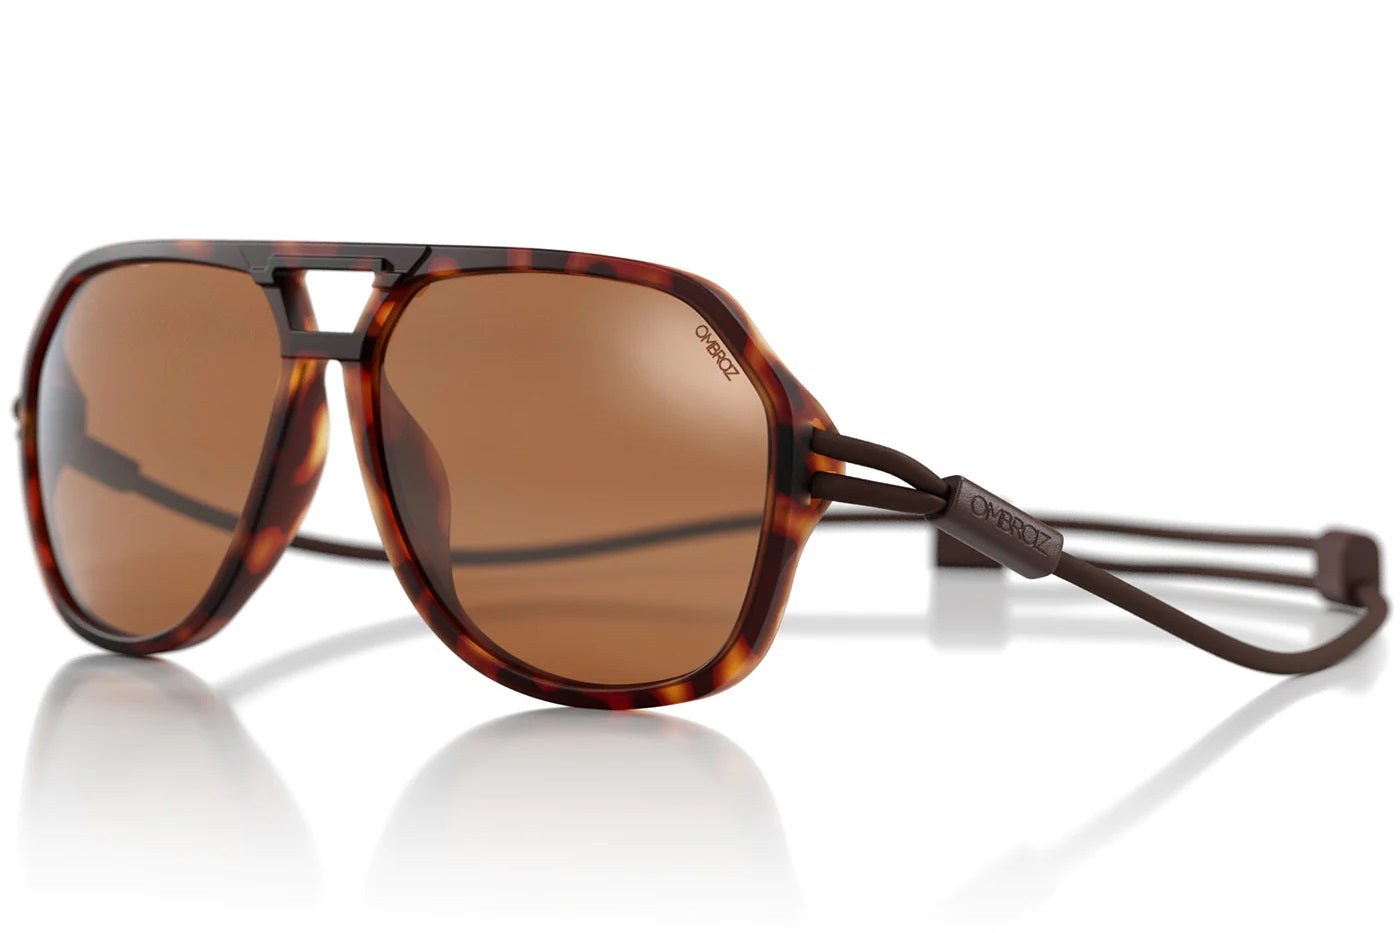 Ombraz Classic Sunglasses - Tortoise - w/ Polarized Brown Lenses Regular MPN: OBZ-C-TRT-PL-BRN-RG Sunglasses Classic Sunglasses